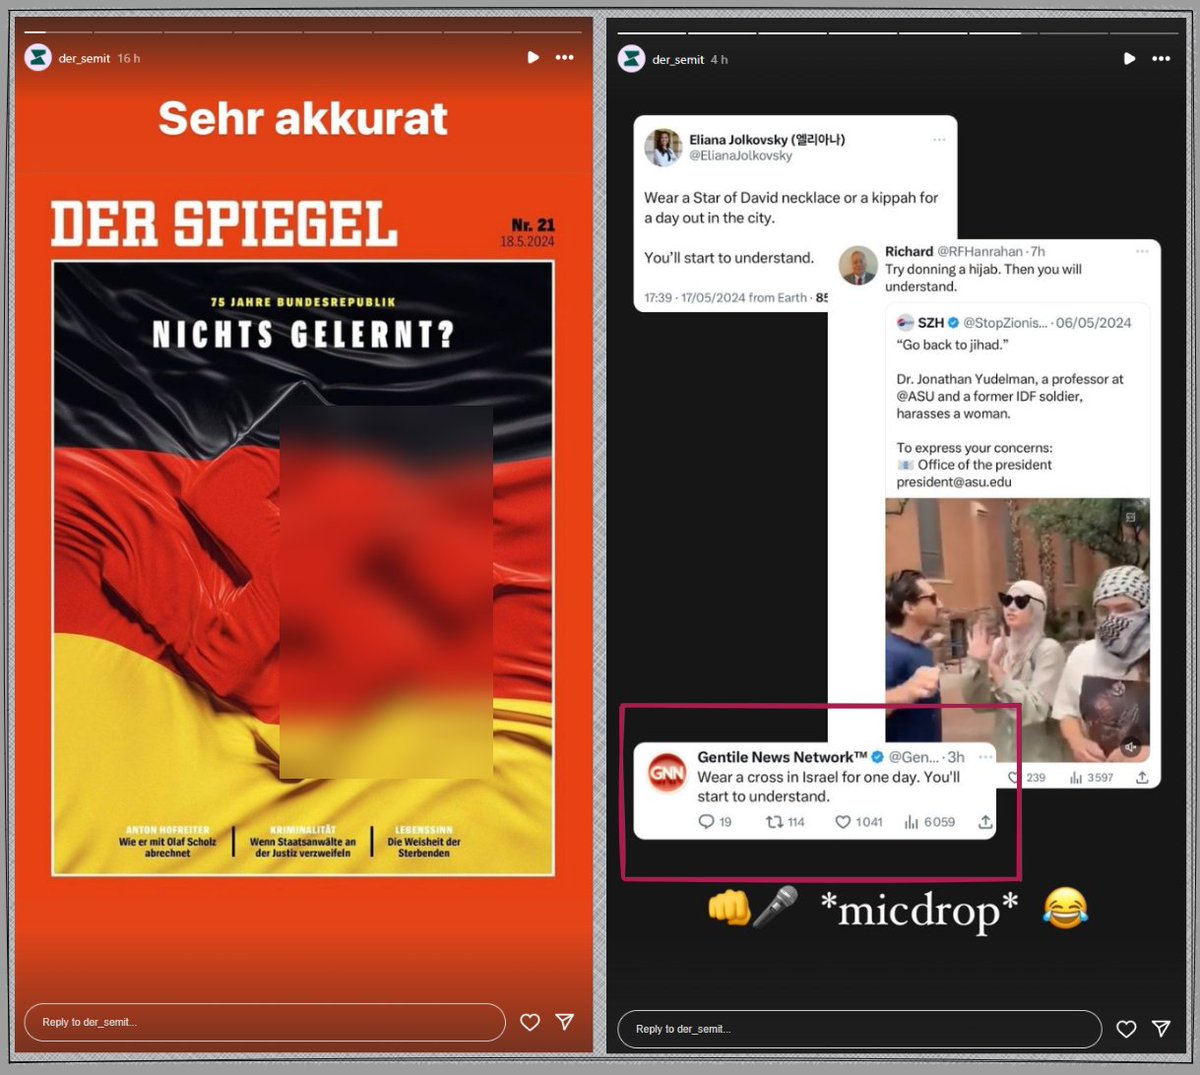 'Der Semit' ist ein Account, der auf Instagram in linken antizionistischen Kreisen geteilt wird.

Links bestätigt er Deutschland nichts gelernt zu haben.

Rechts macht er *micdrop* mit Screenshot aus einem neo-Nazi Account.

Deutscher Antizionismus am äußersten Limit.